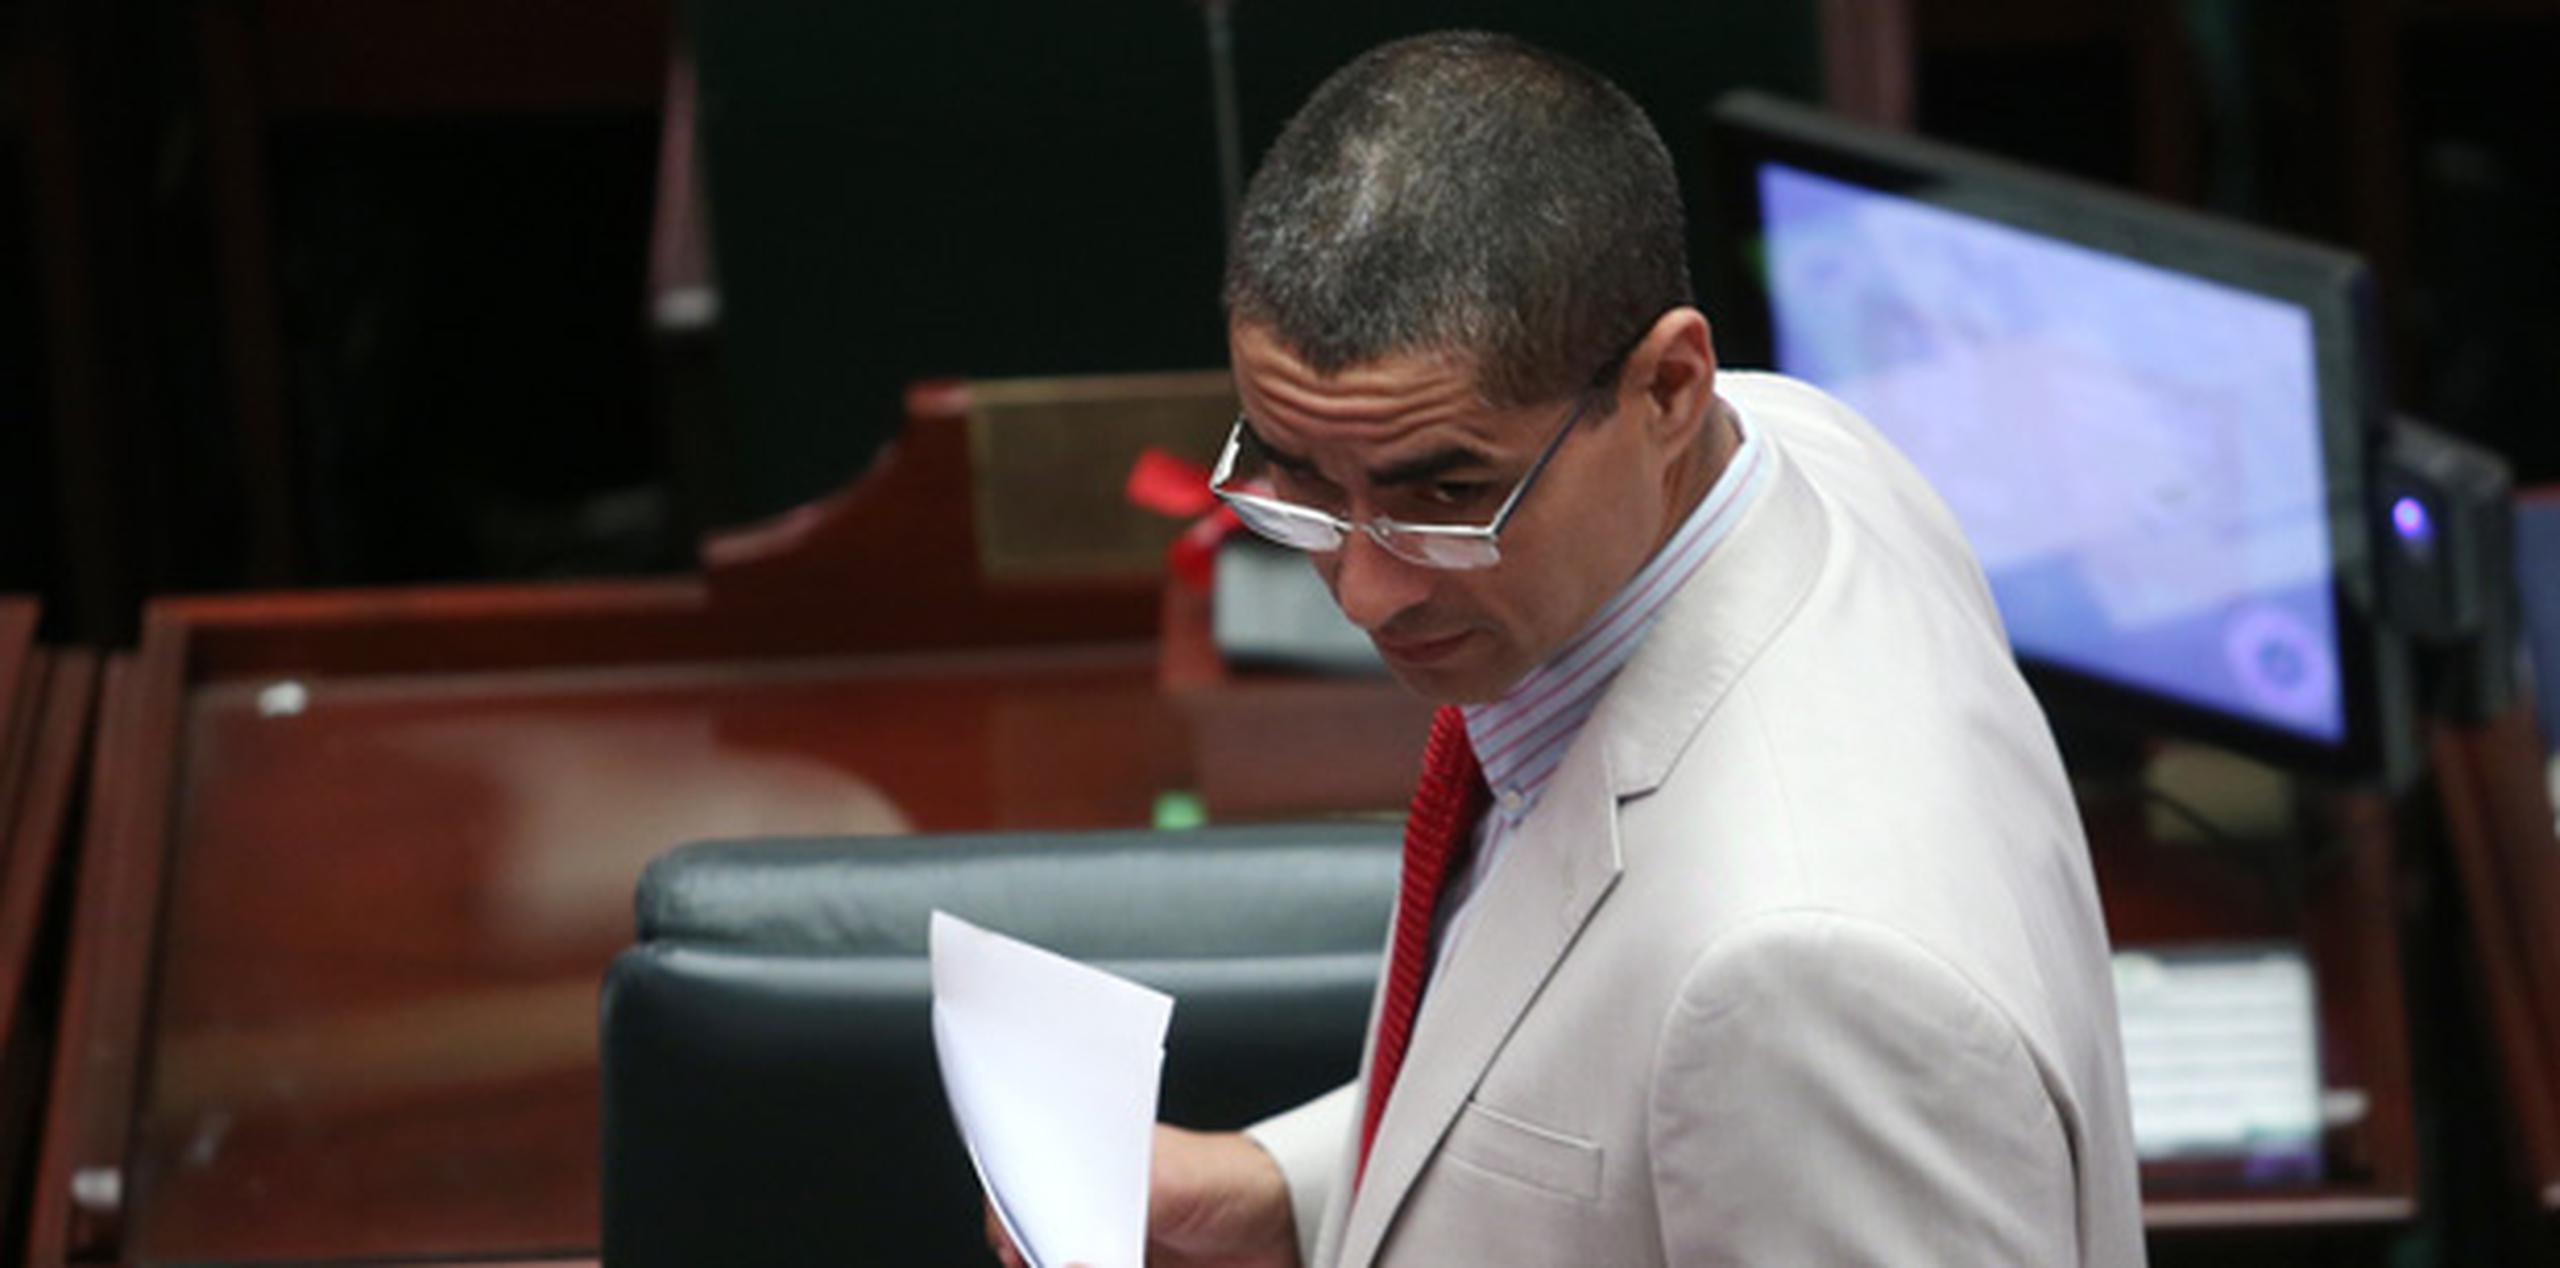 El representante Carlos Vargas emitió una declaración escrita para afirmar que le votará en contra a la medida. (Archivo)